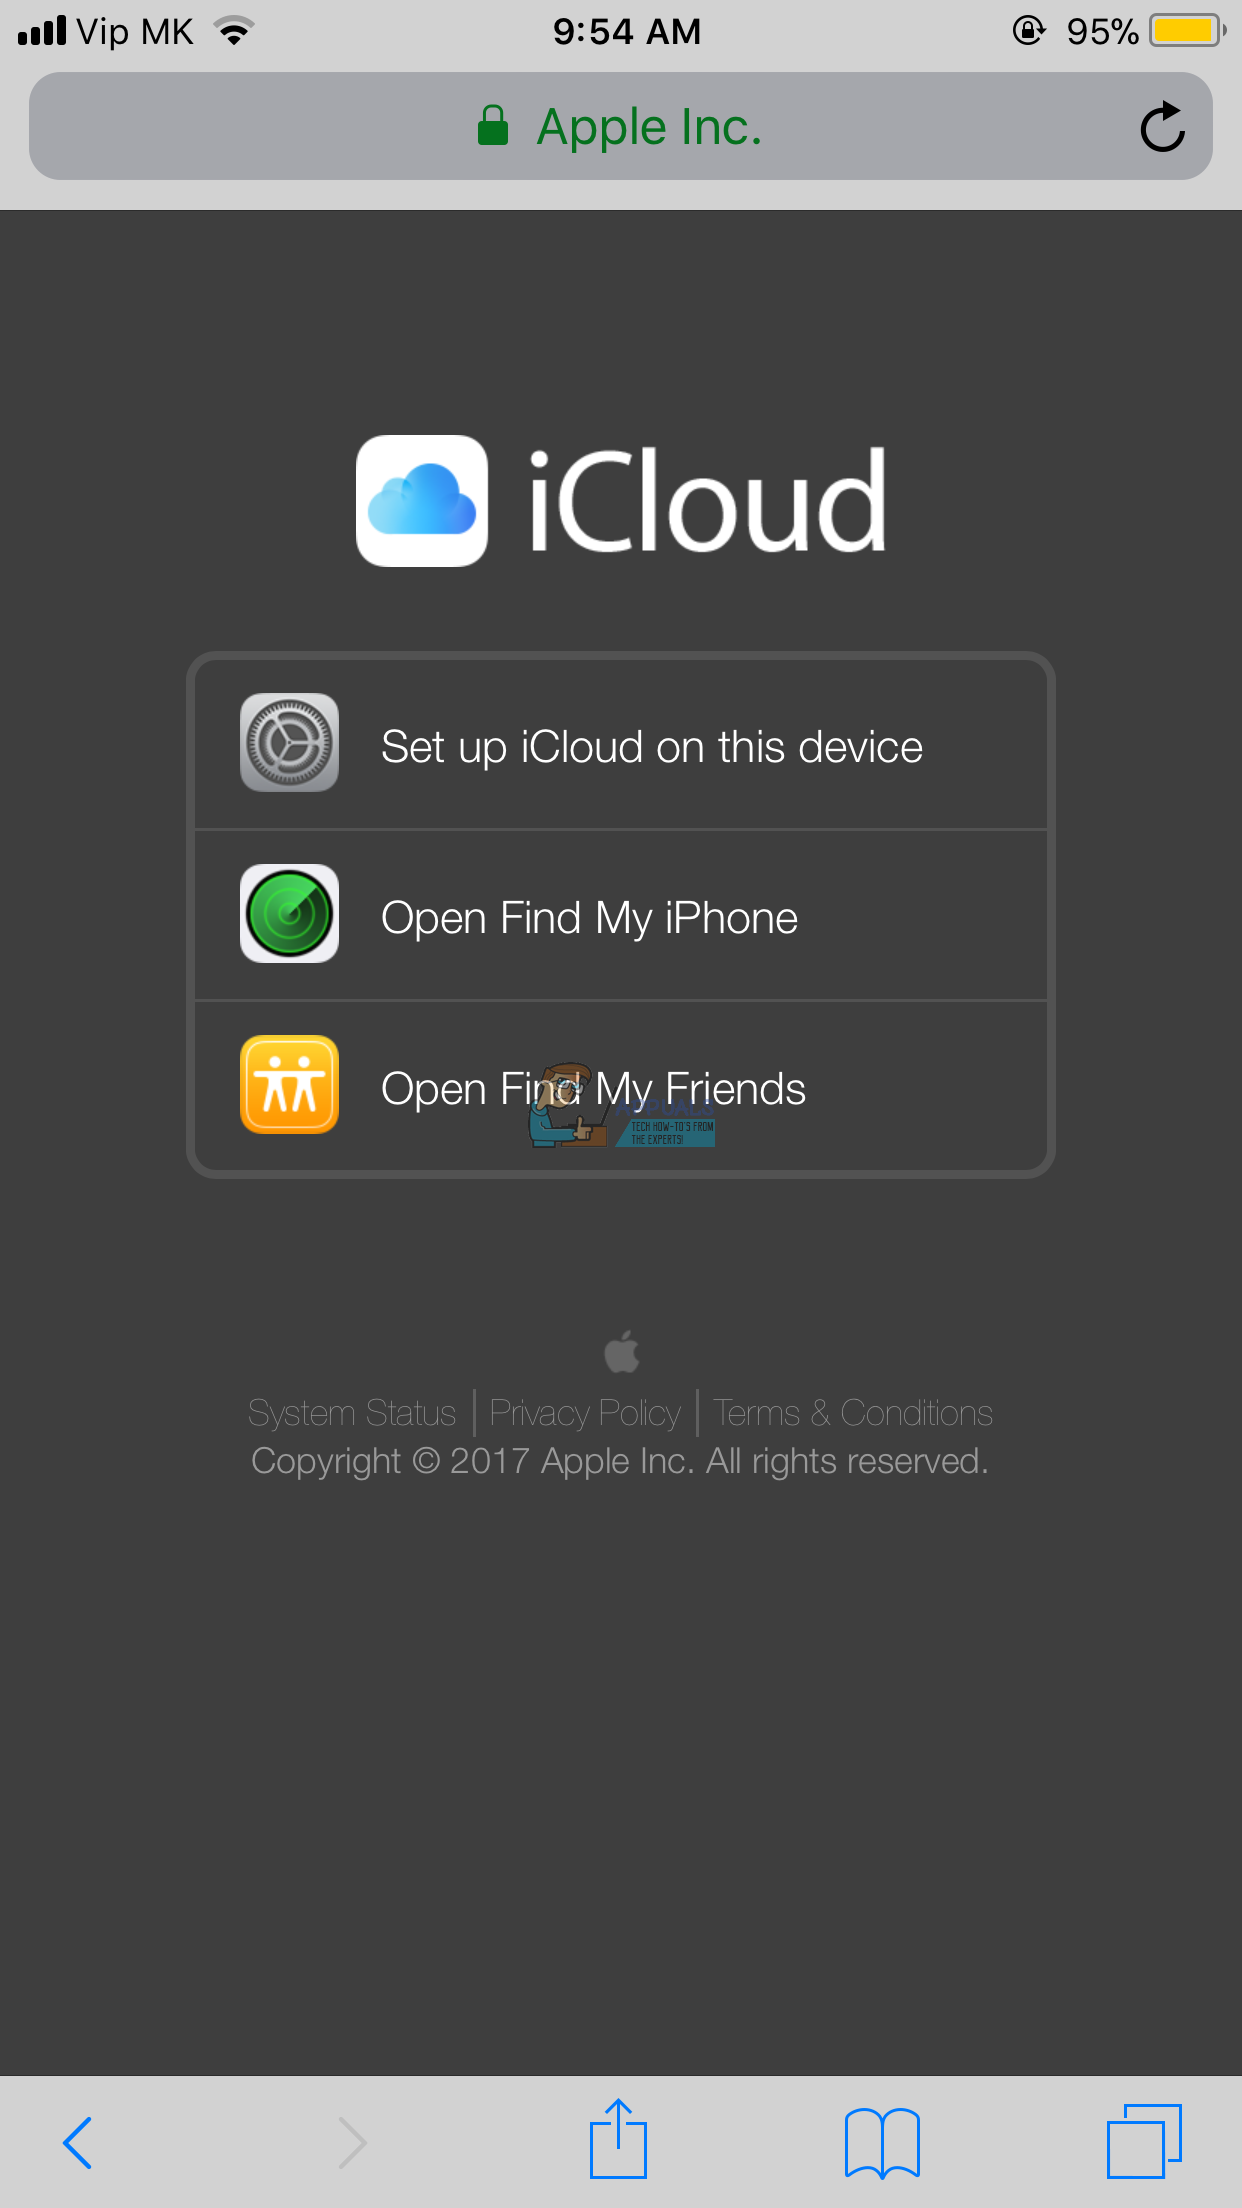 Så här loggar du in på iCloud.com med din iPhone eller iPad